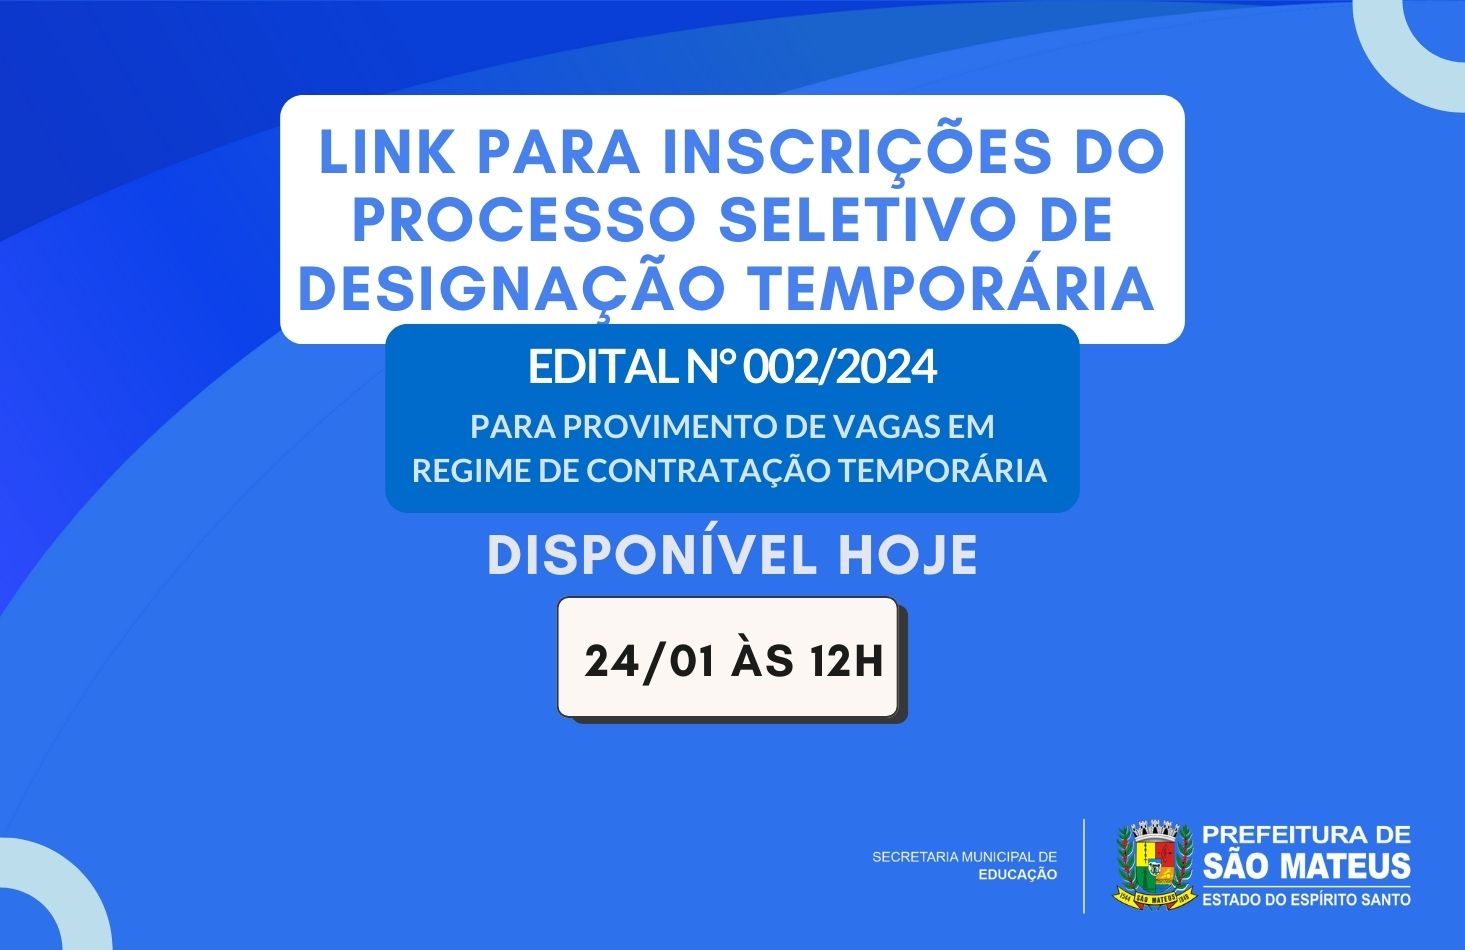 LINK PARA INSCRIÇÕES DO PROCESSO SELETIVO 002/2024